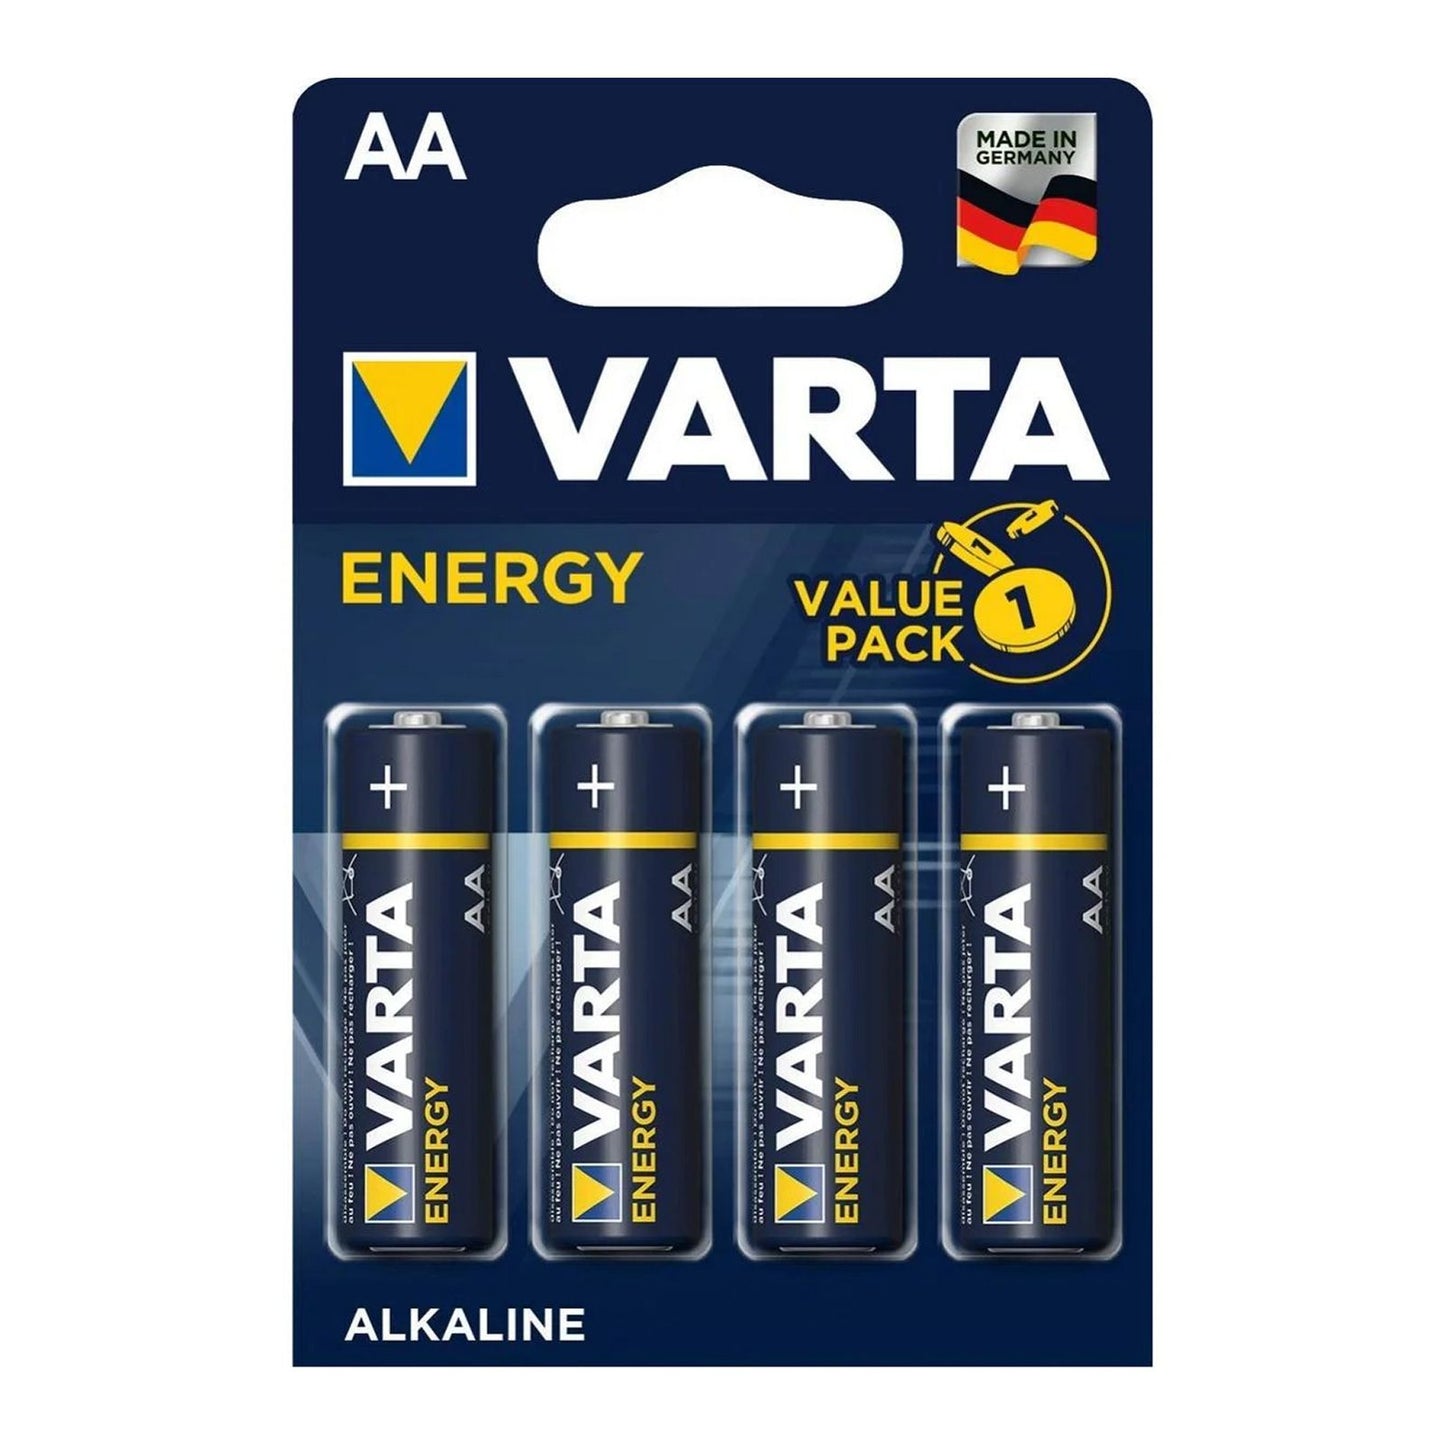 VARTA Energy Stylo AA 1,5V LR6, confezione da 4, blister 4 pile stilo alcaline